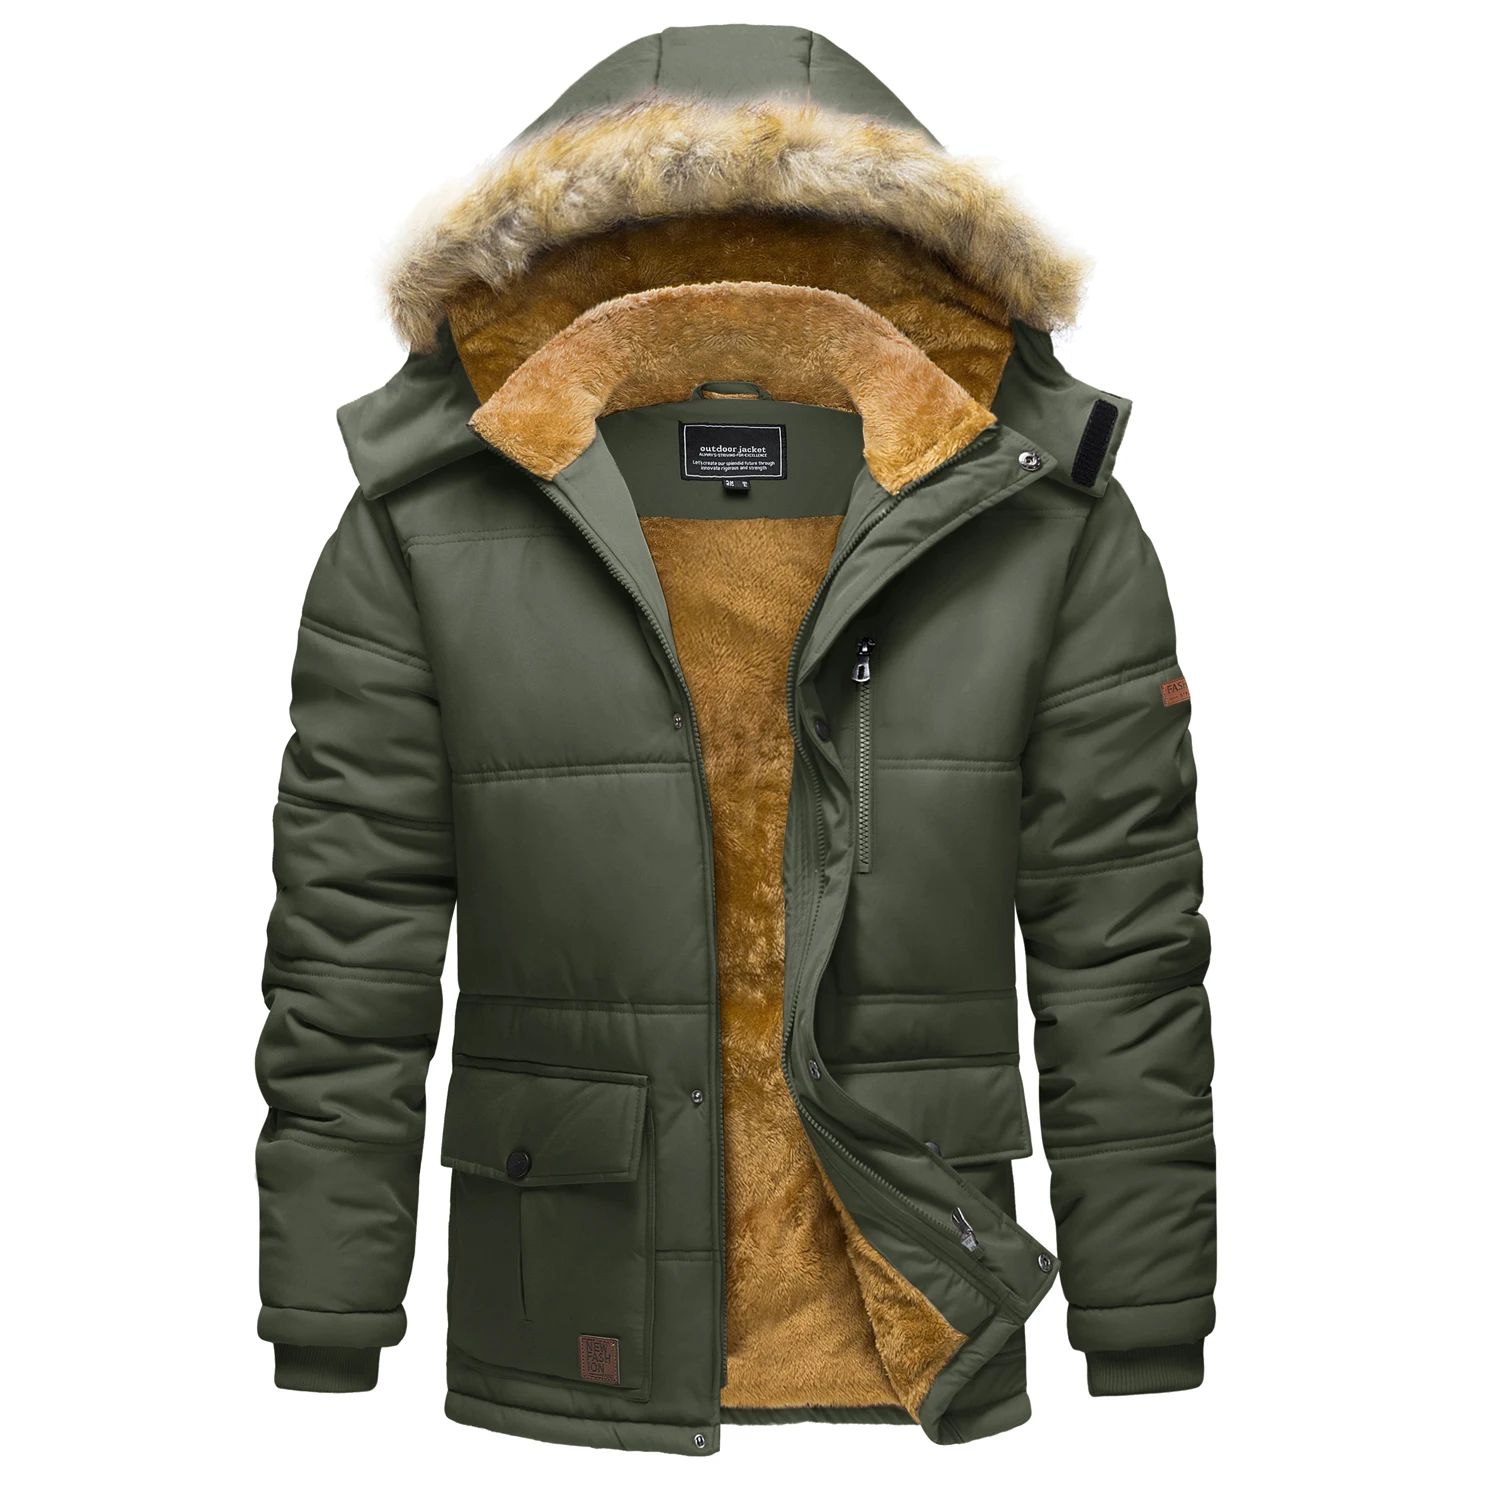 Mens Winter Fleece Jacket Hiking Ski Snowboard Hooded Coats Thicken Jackets Multi-pockets Outwear